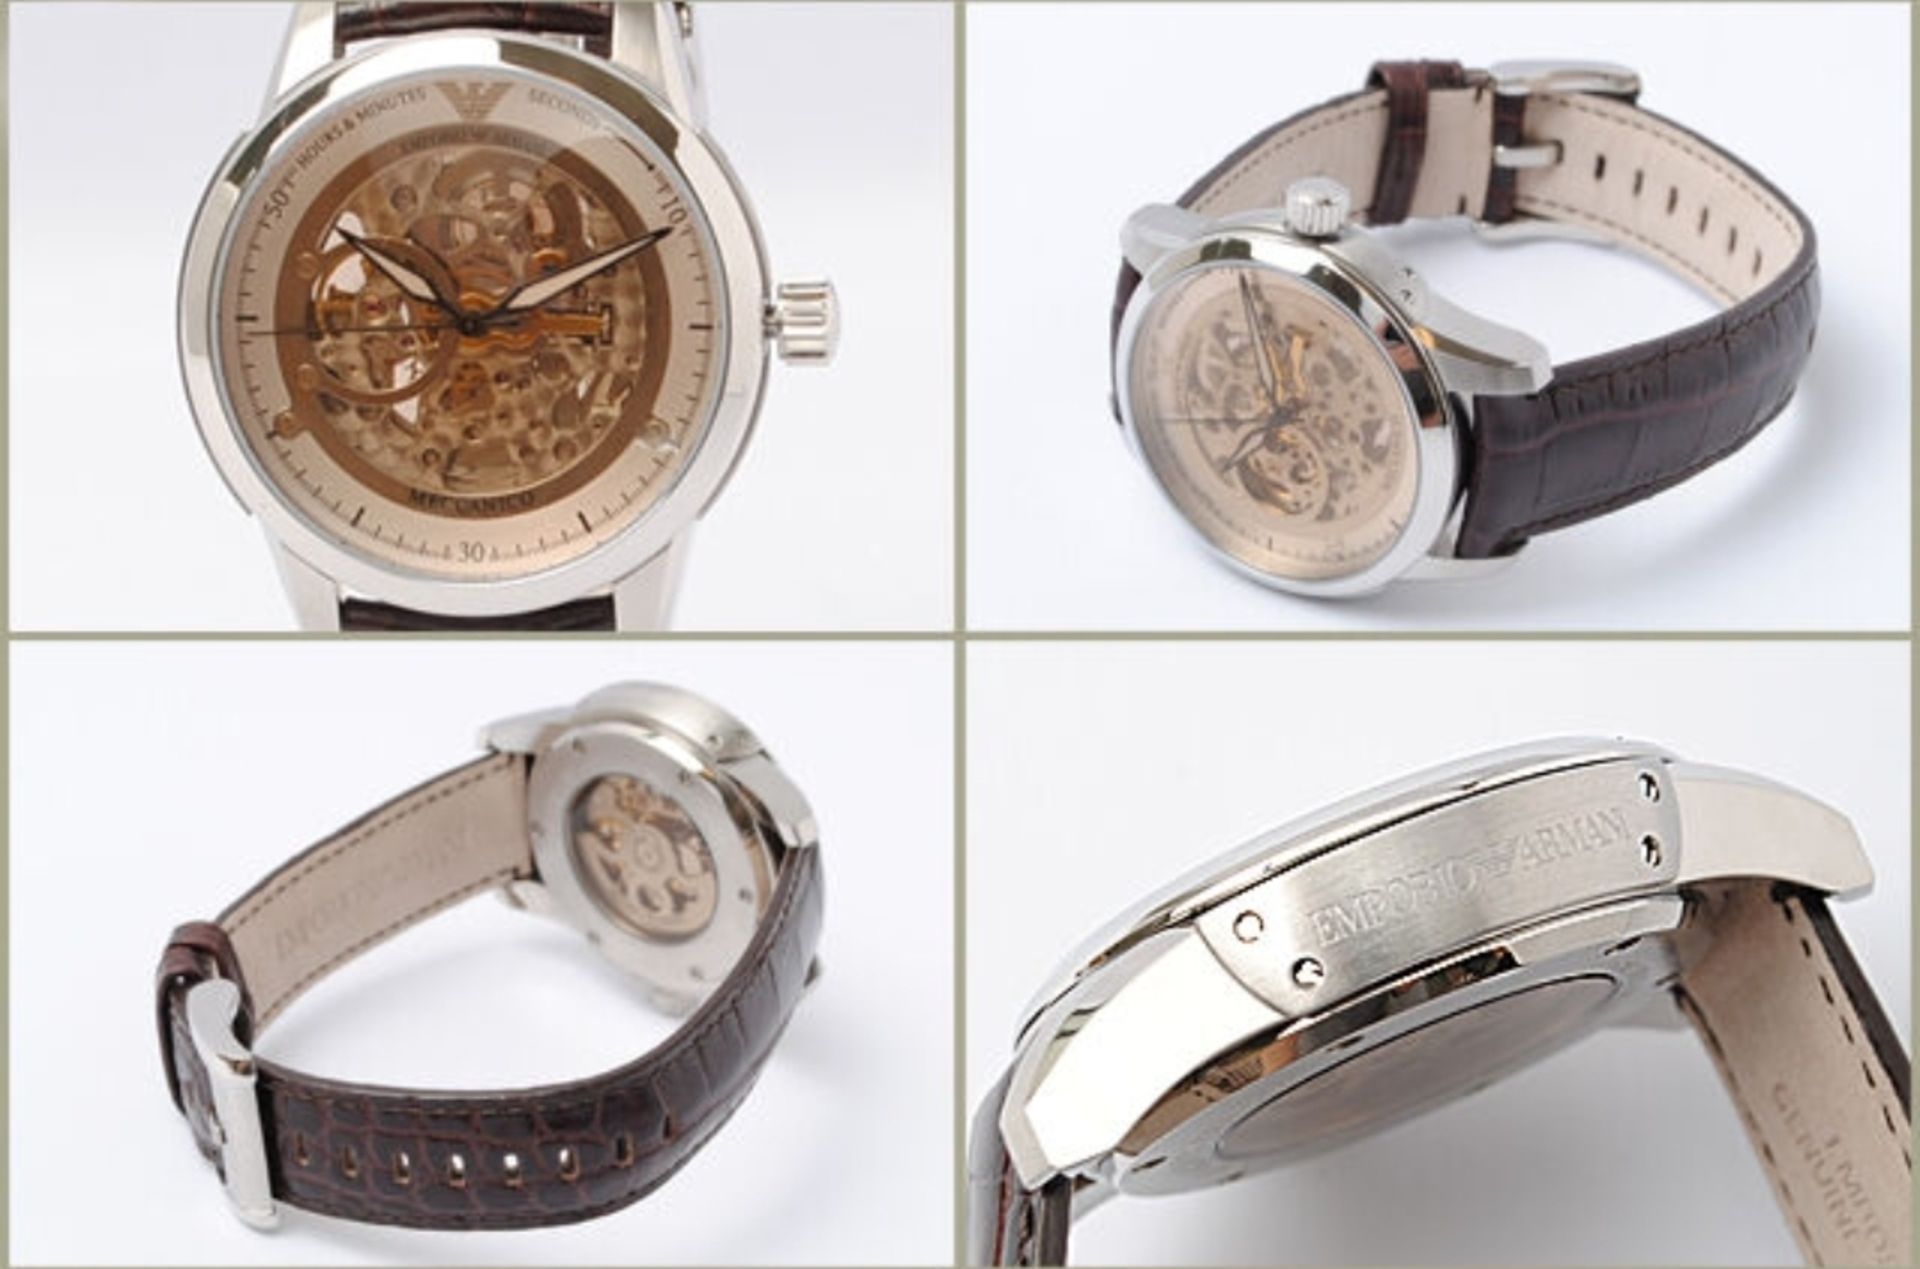 Emporio Armani A4627 Men's Meccanico Brown Leather Strap Watch - Image 4 of 4